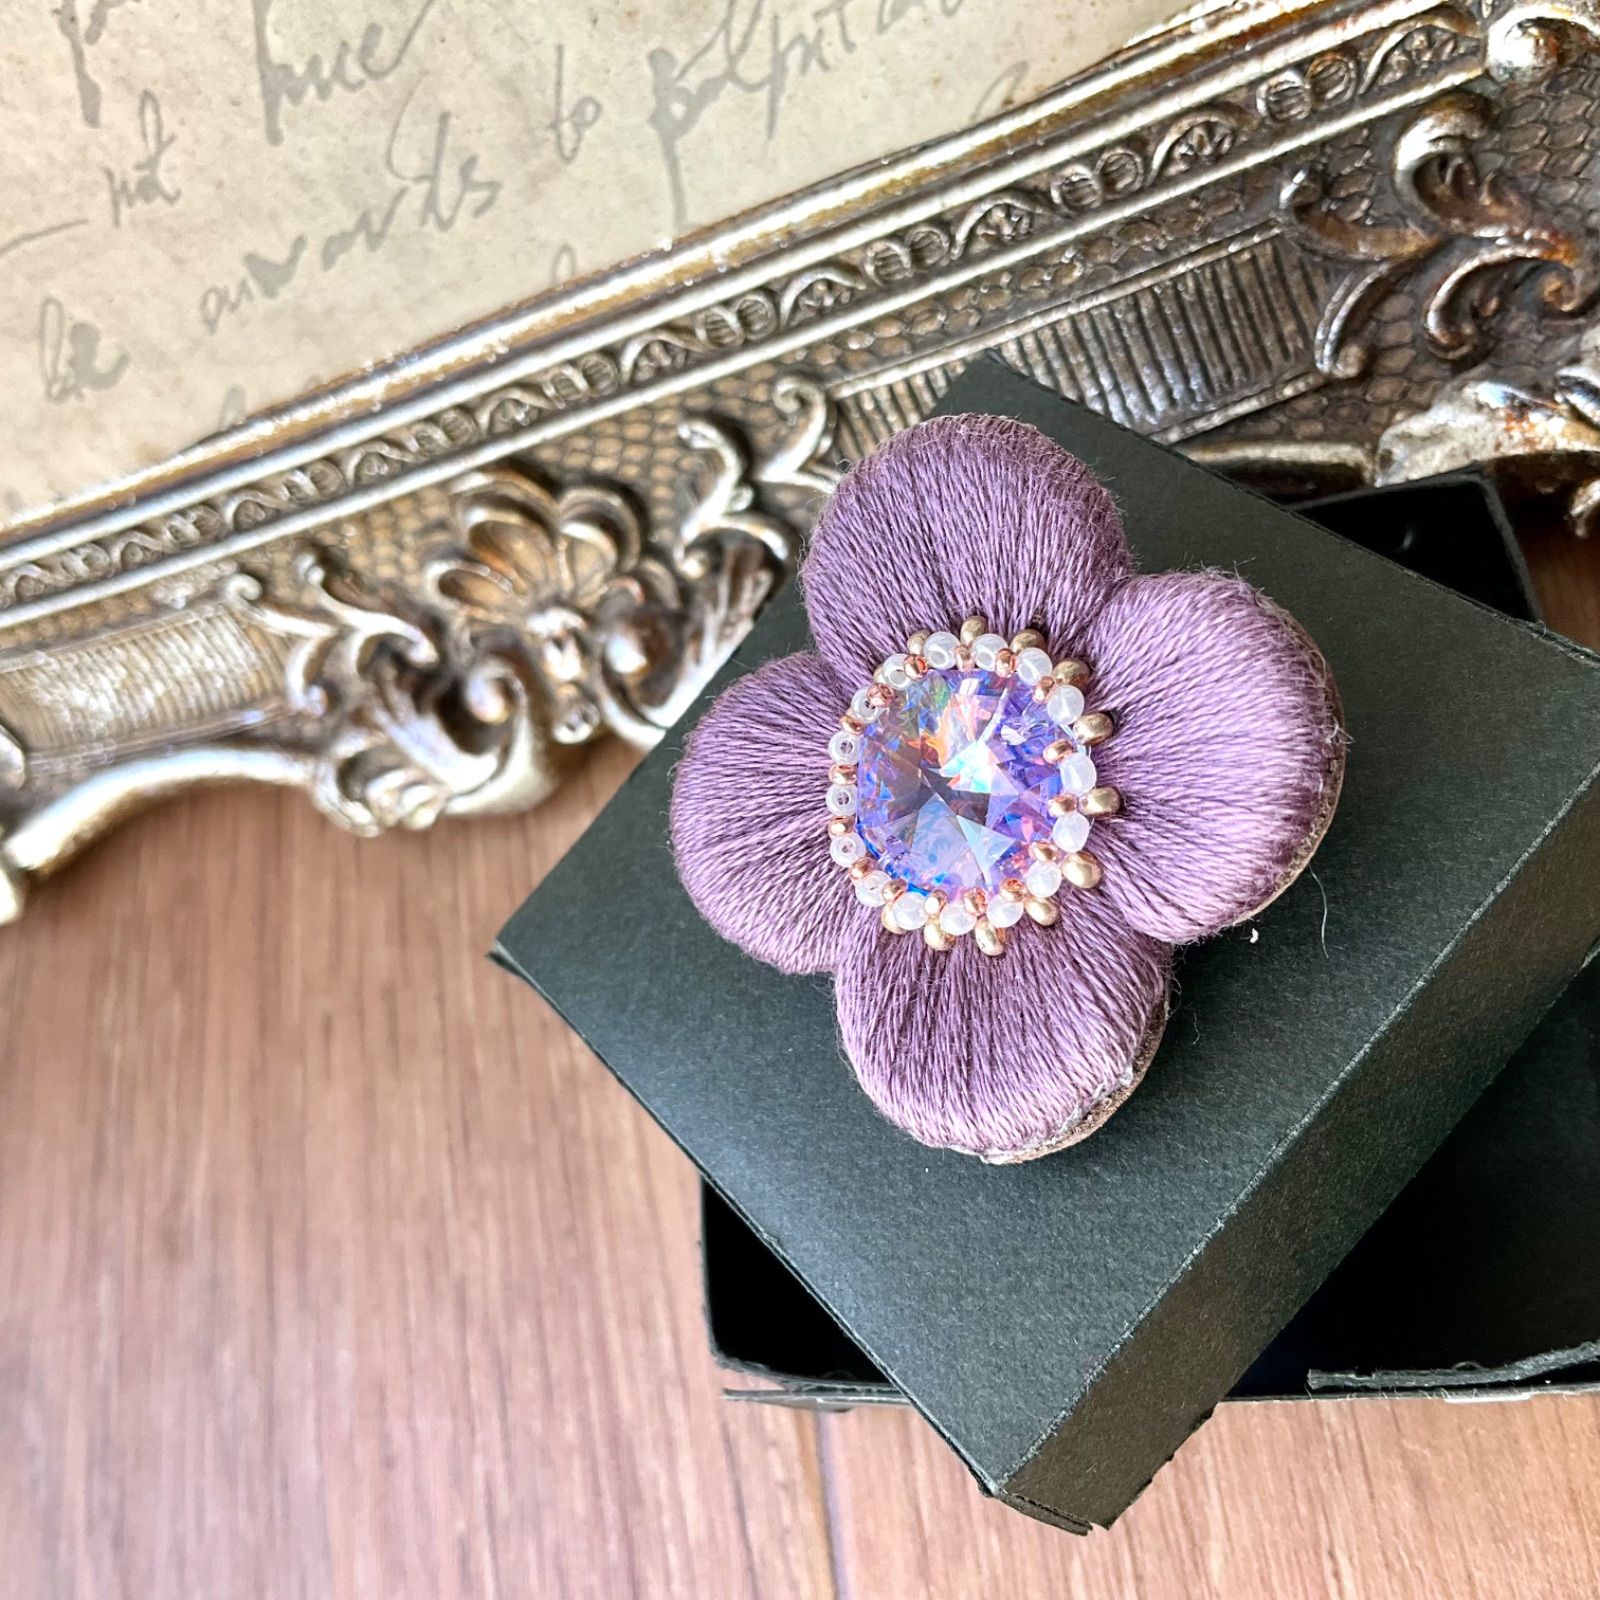 ぷっくり艶めくお花の刺繍ブローチ or ポニーフック ラベンダー 紫